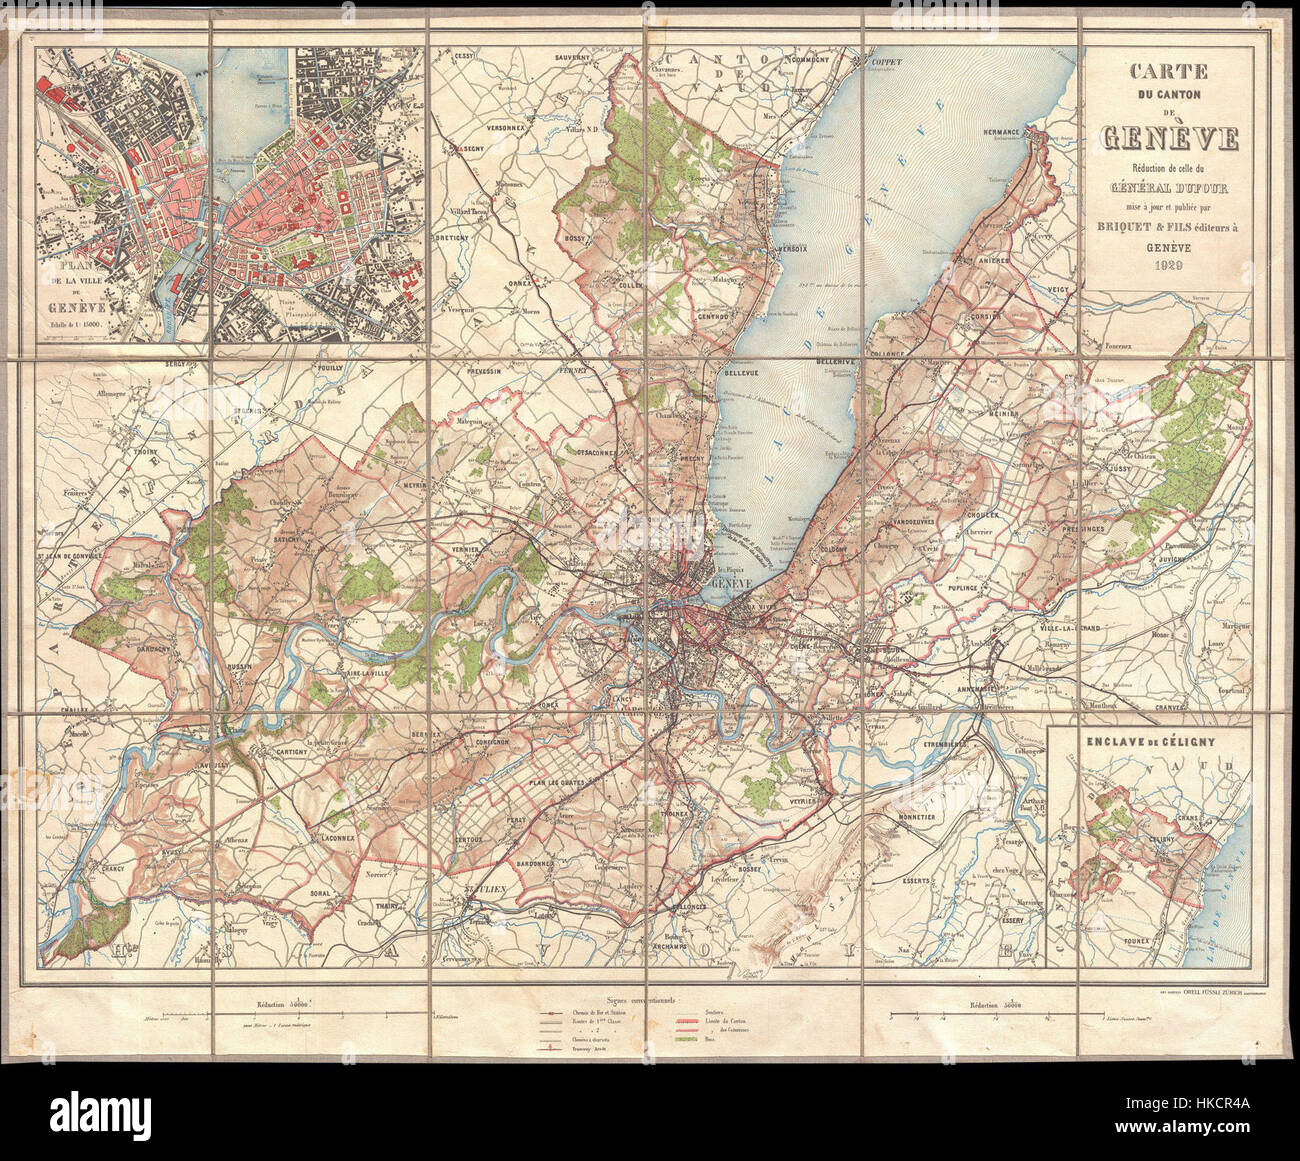 1929 Briquet Map of Geneva and Lake Geneva, Switzerland   Geographicus   Geneva briquet 1929 Stock Photo